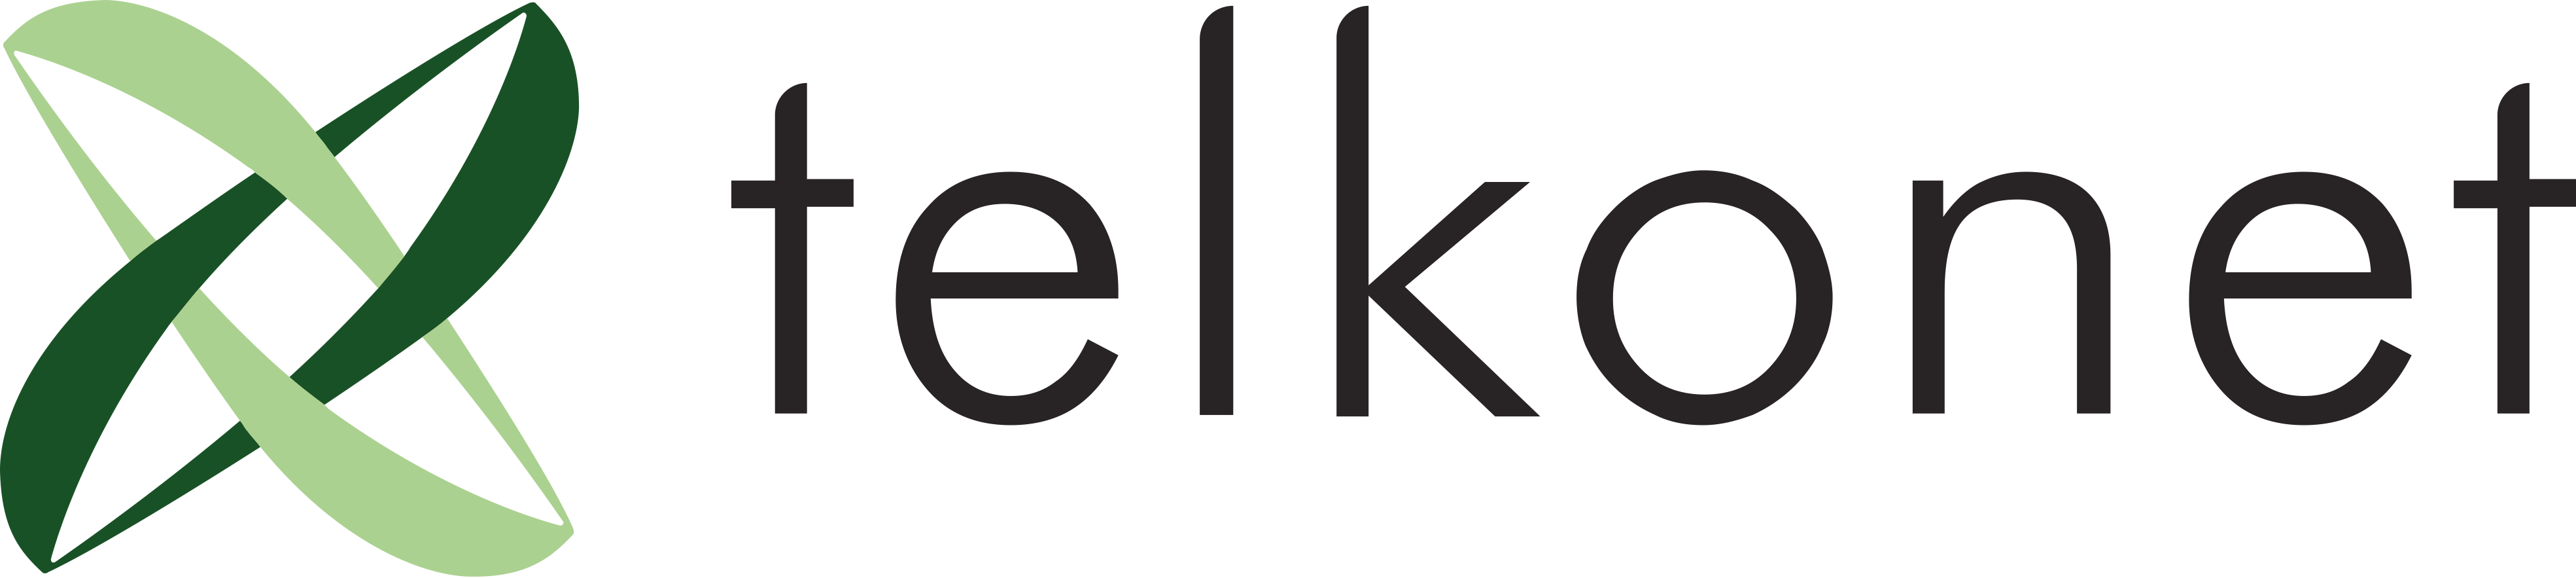 telkonet-logo-energy-management-system-provider